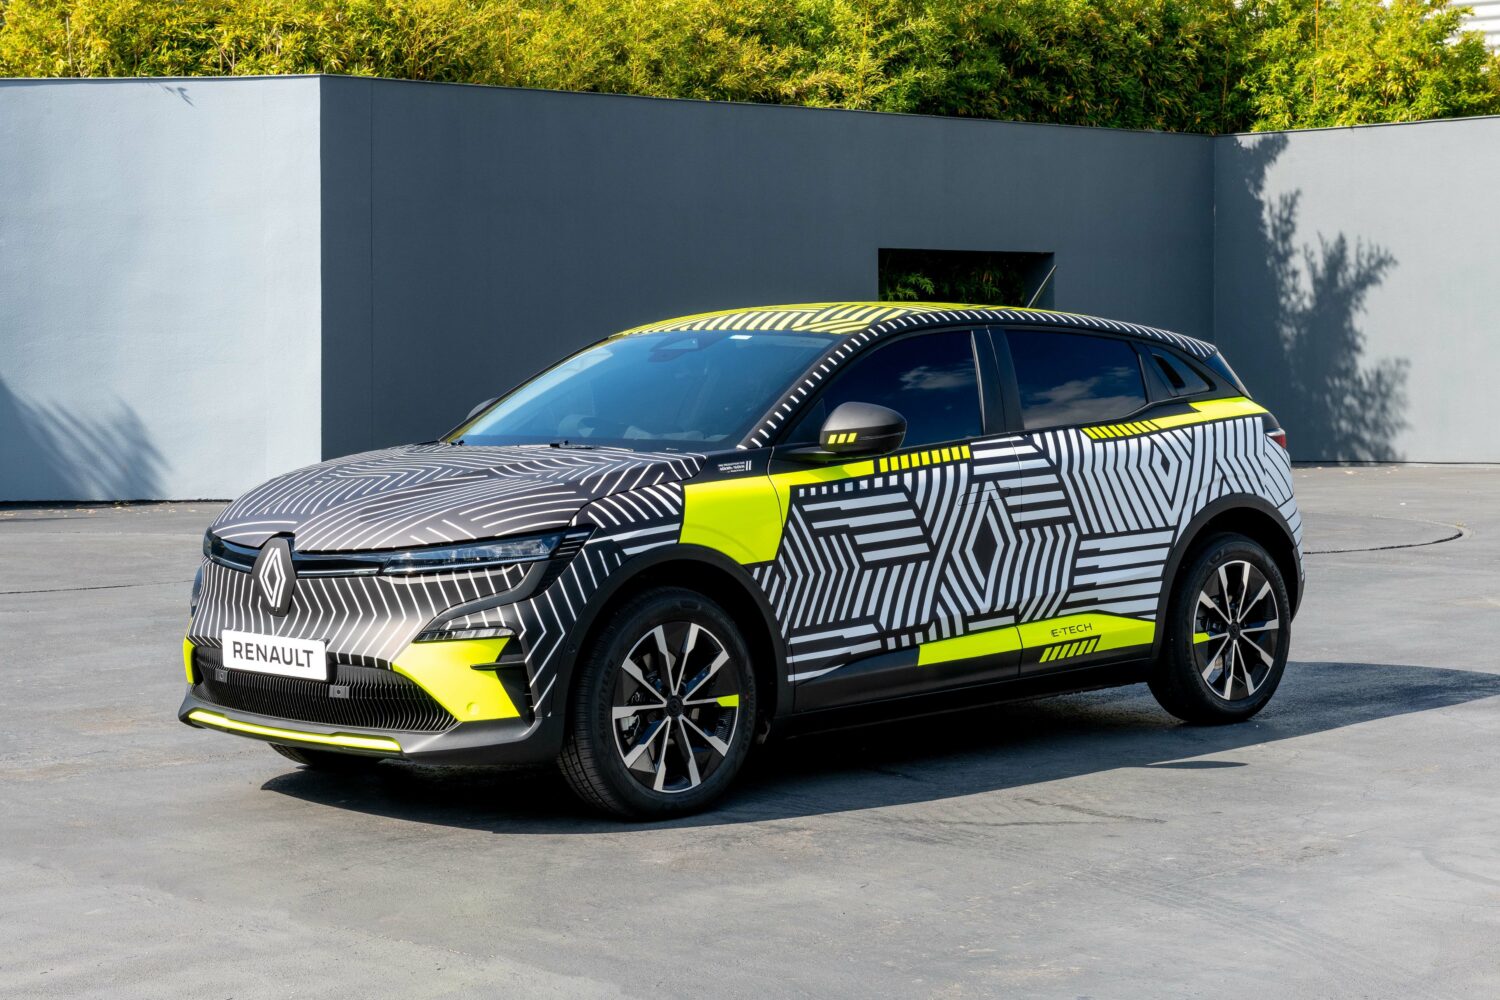 2021 - Nouvelle Renault MEGANE E-TECH Electric pré-série